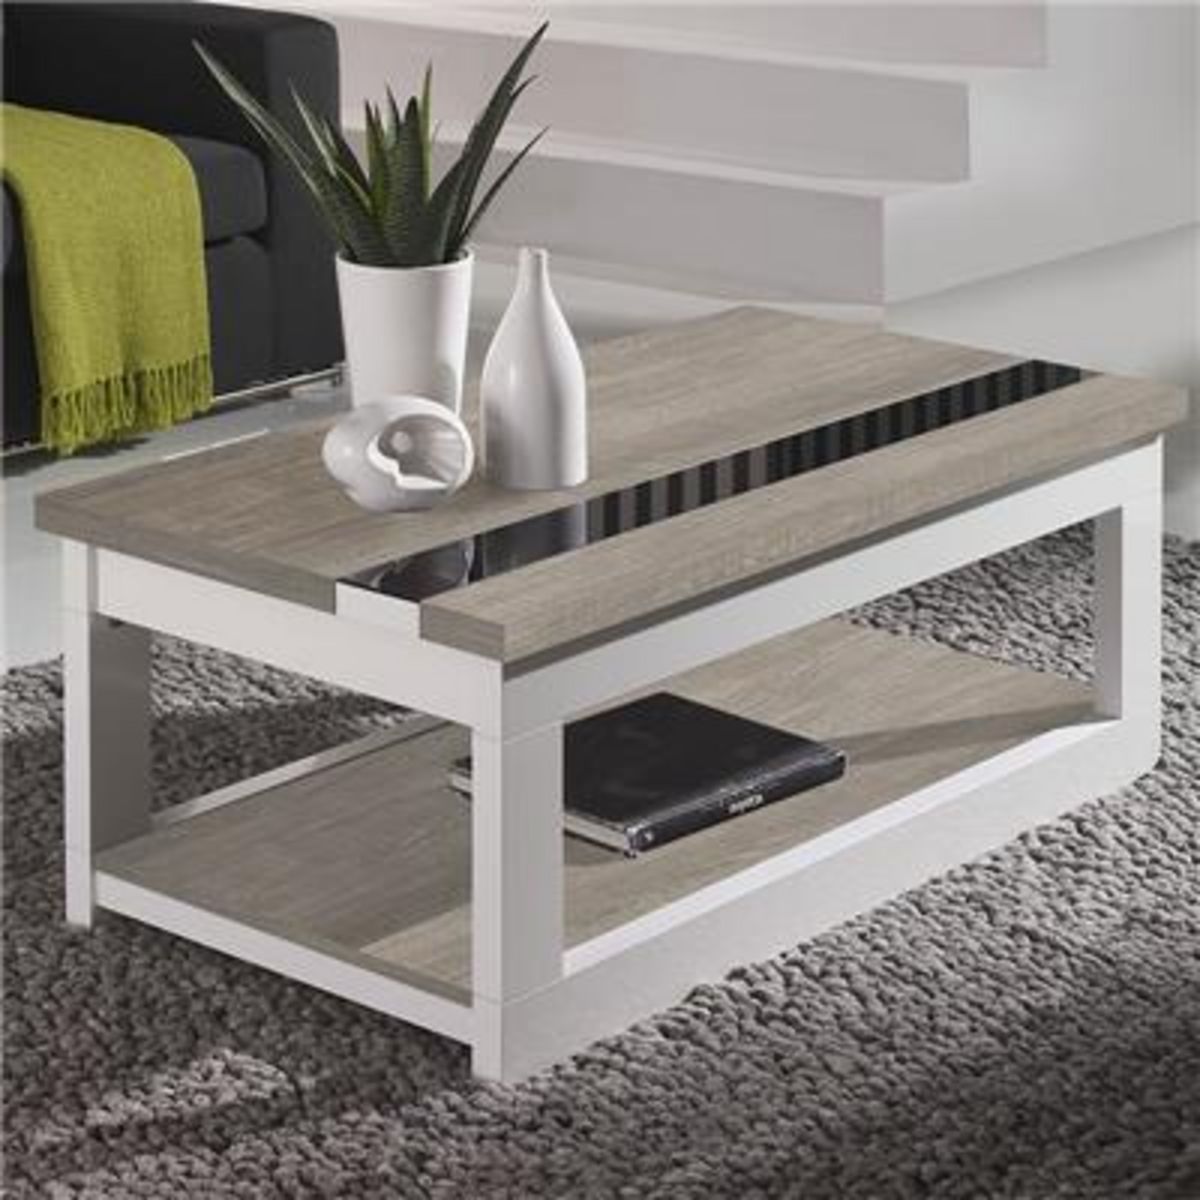 NOUVOMEUBLE Table basse relevable moderne couleur bois clair et blanc MONTREAL 2